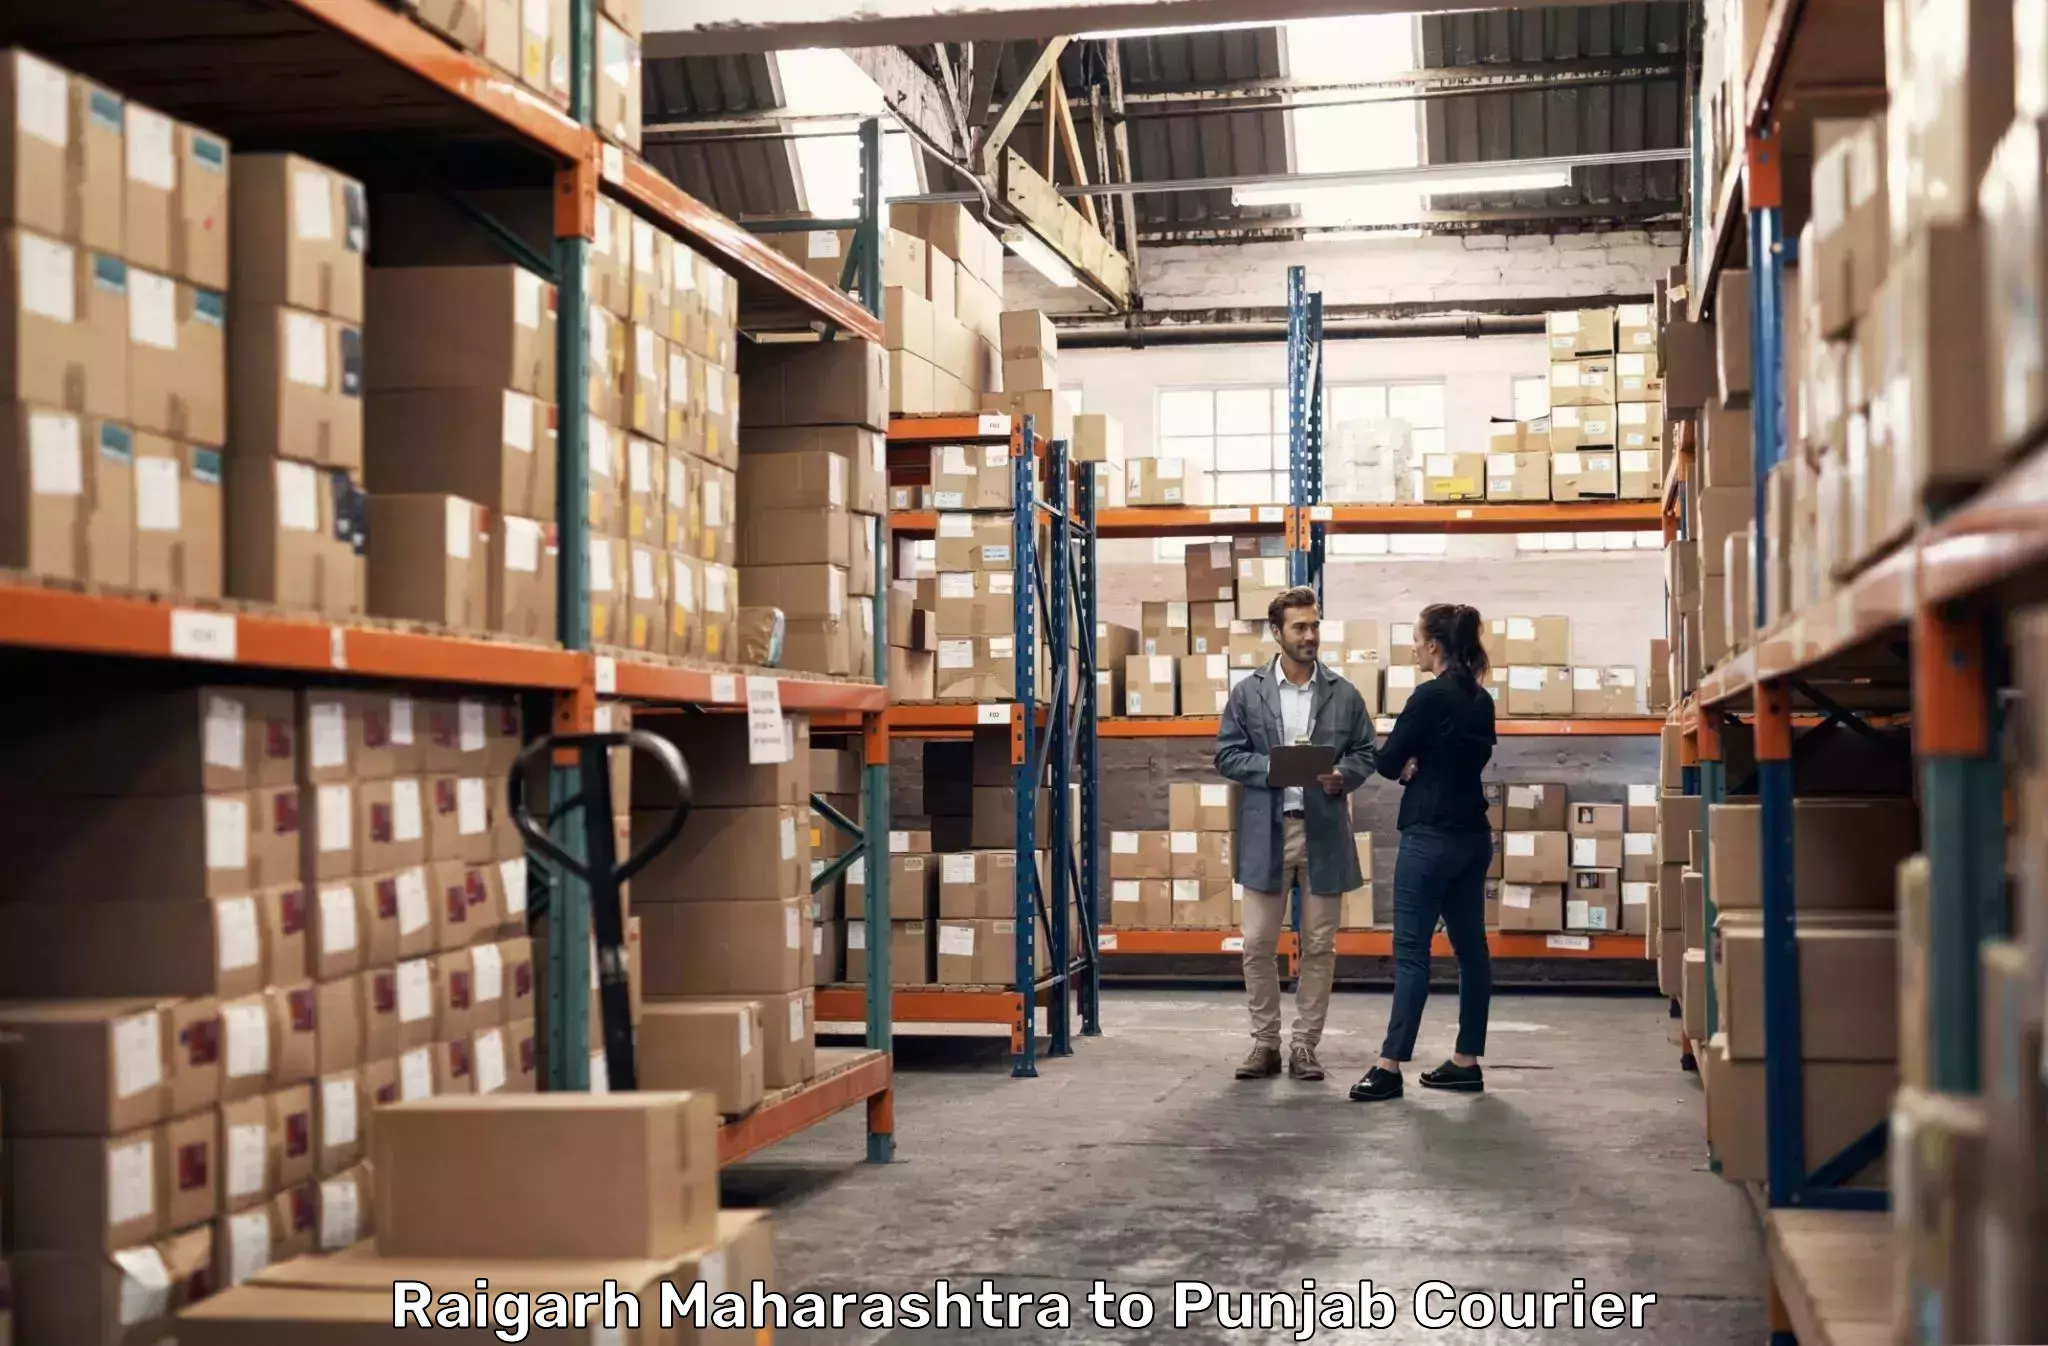 Global logistics network Raigarh Maharashtra to Central University of Punjab Bathinda